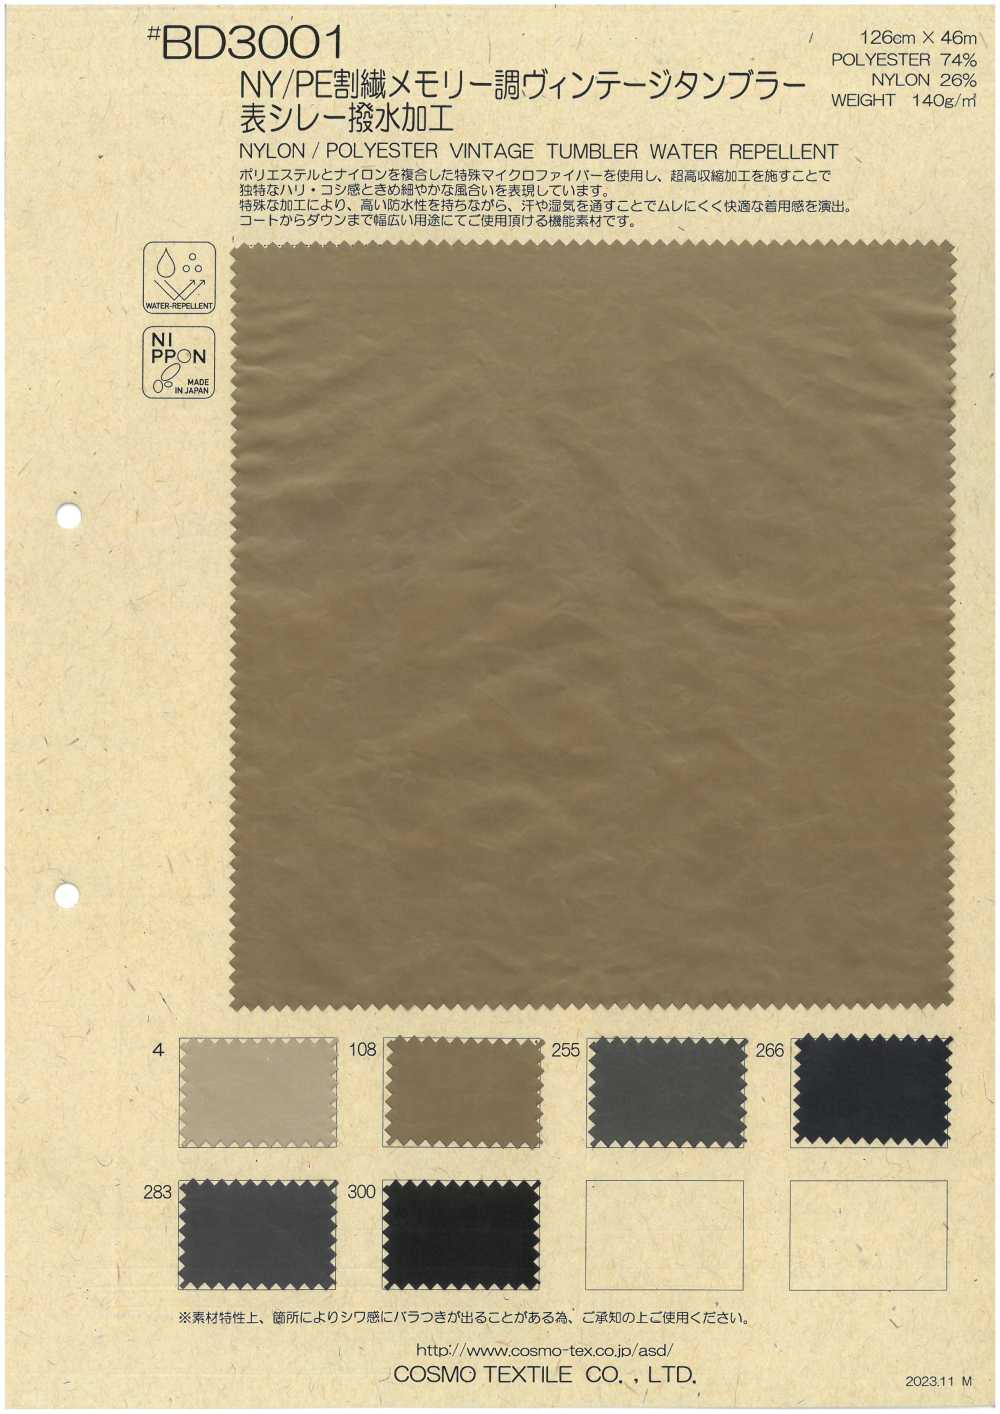 BD3001 Vintage Tunbler-Oberfläche Im Split-Memory-Stil Aus Nylon/Polyester Mit Wasserabweisender Behandlung[Textilgewebe] COSMO TEXTILE